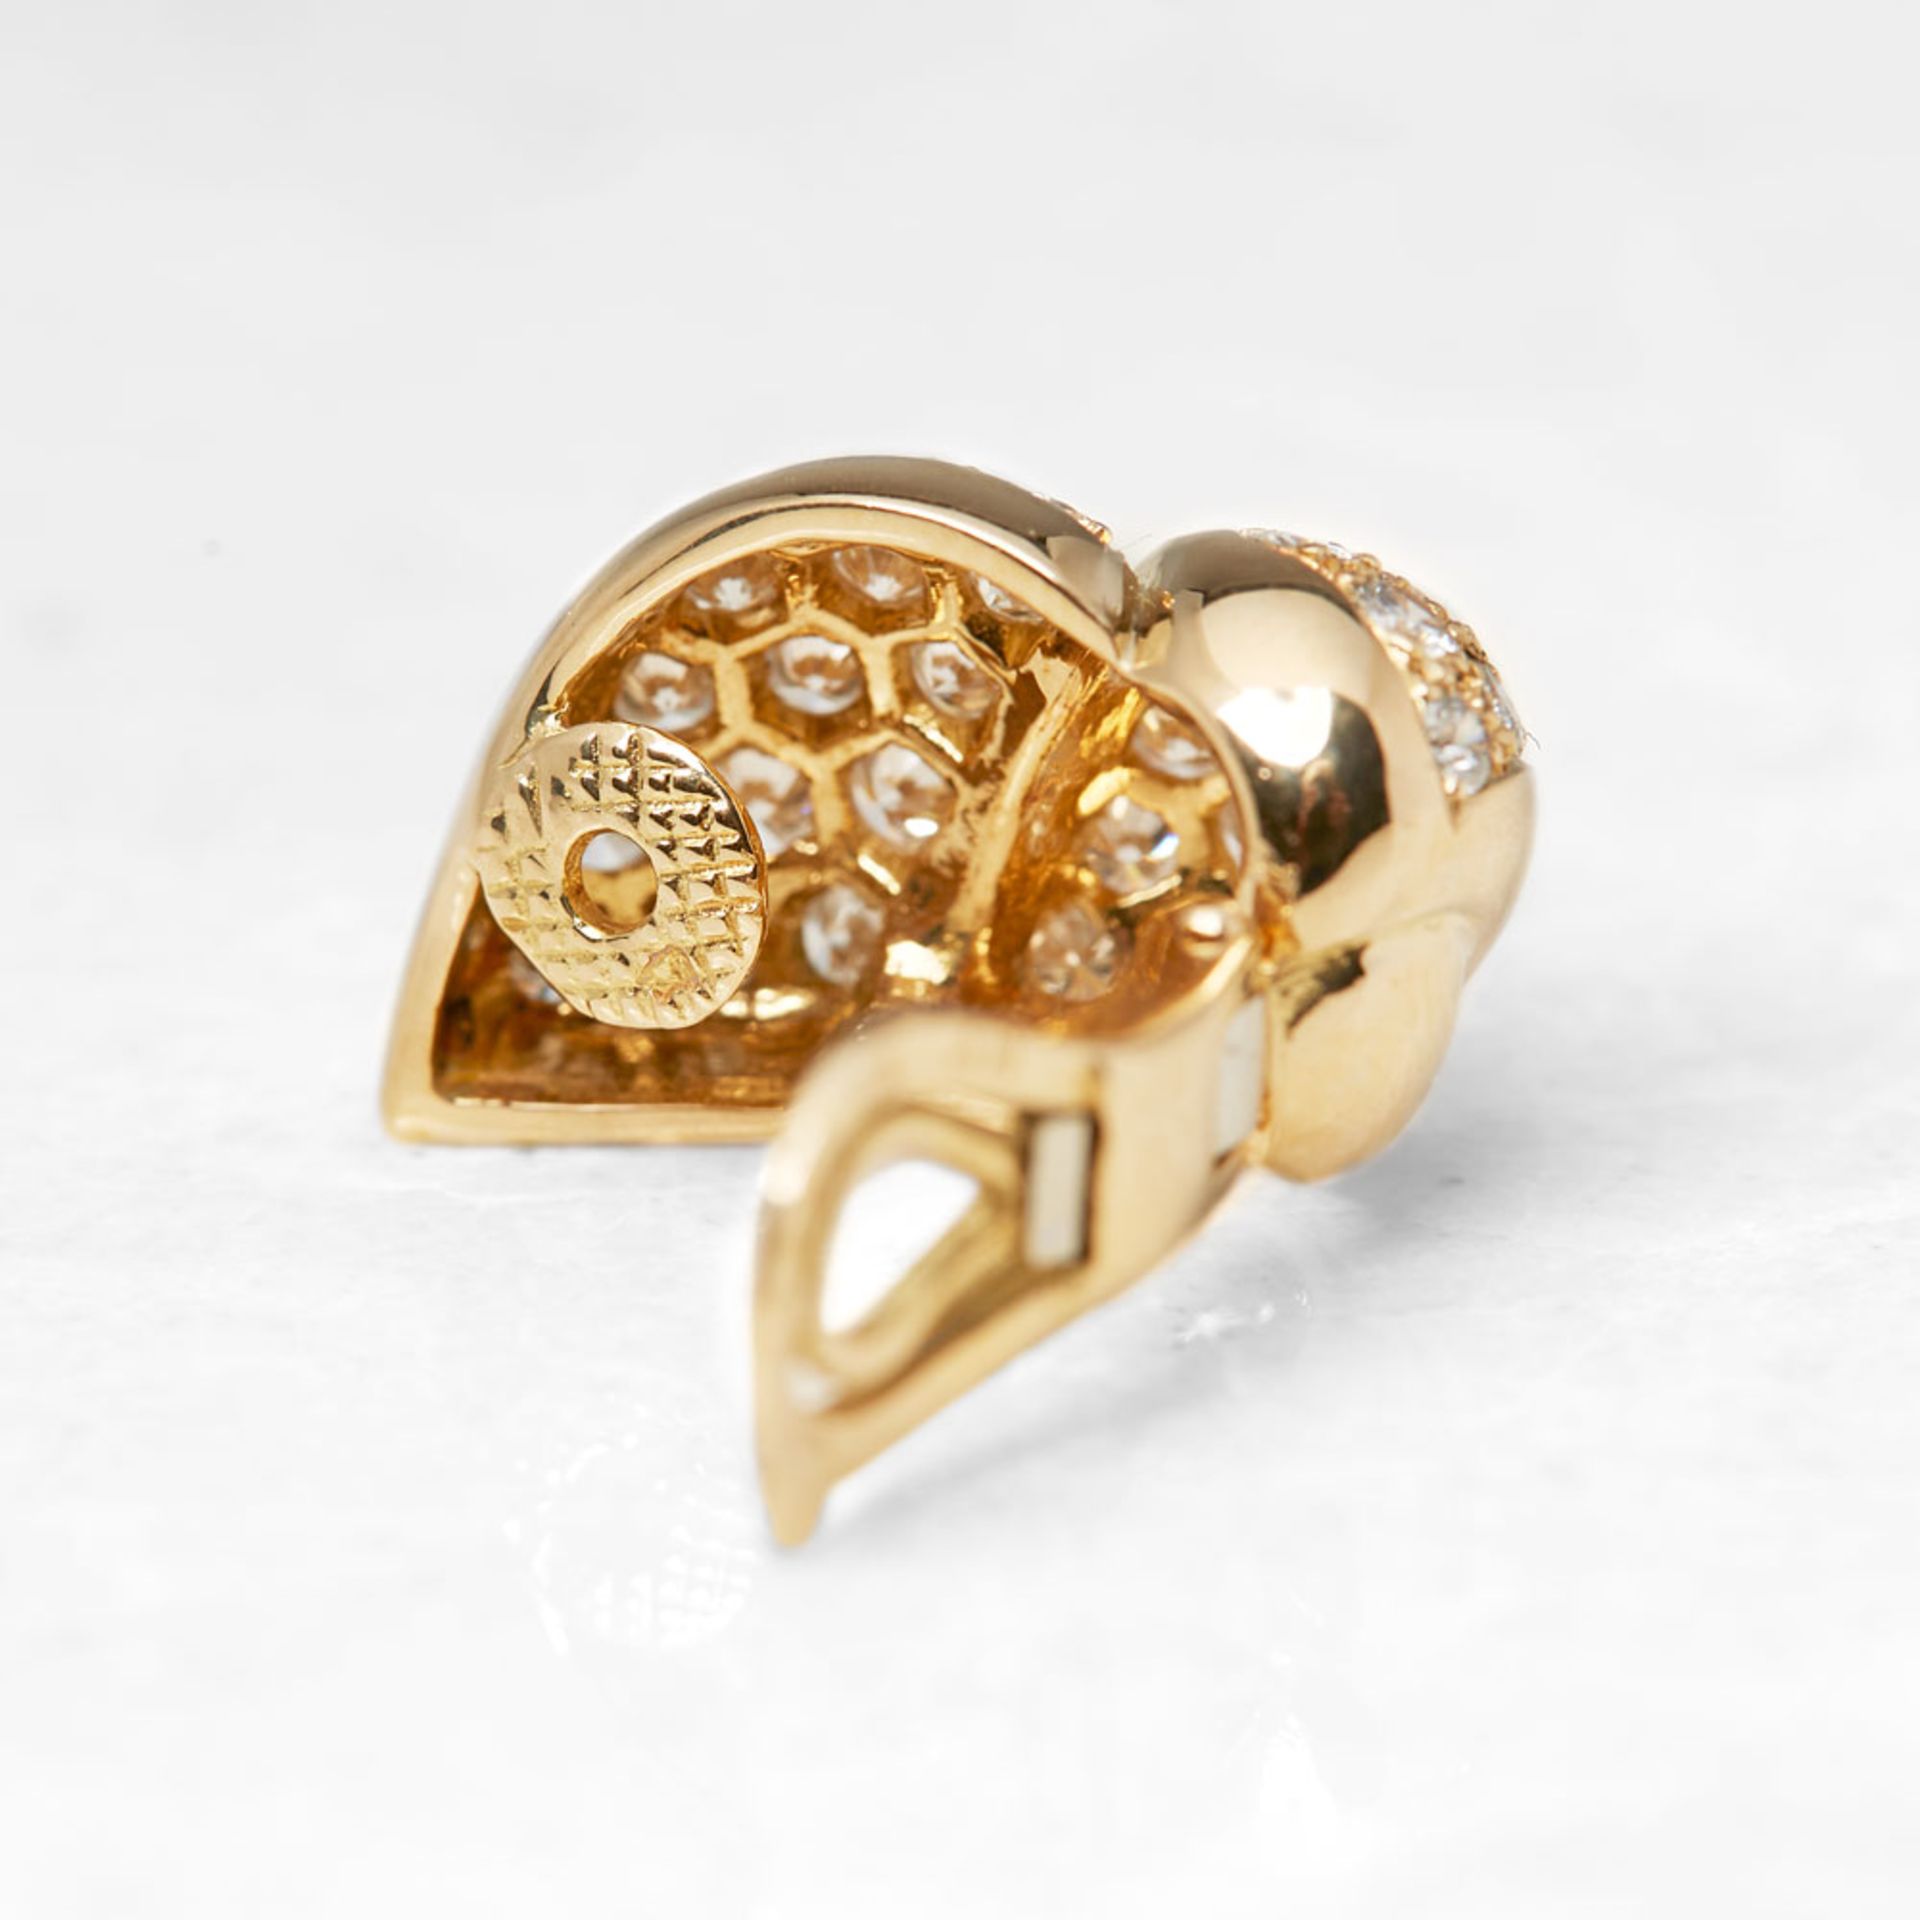 Van Cleef & Arpels 18k Yellow Gold Diamond Earrings - Image 5 of 7